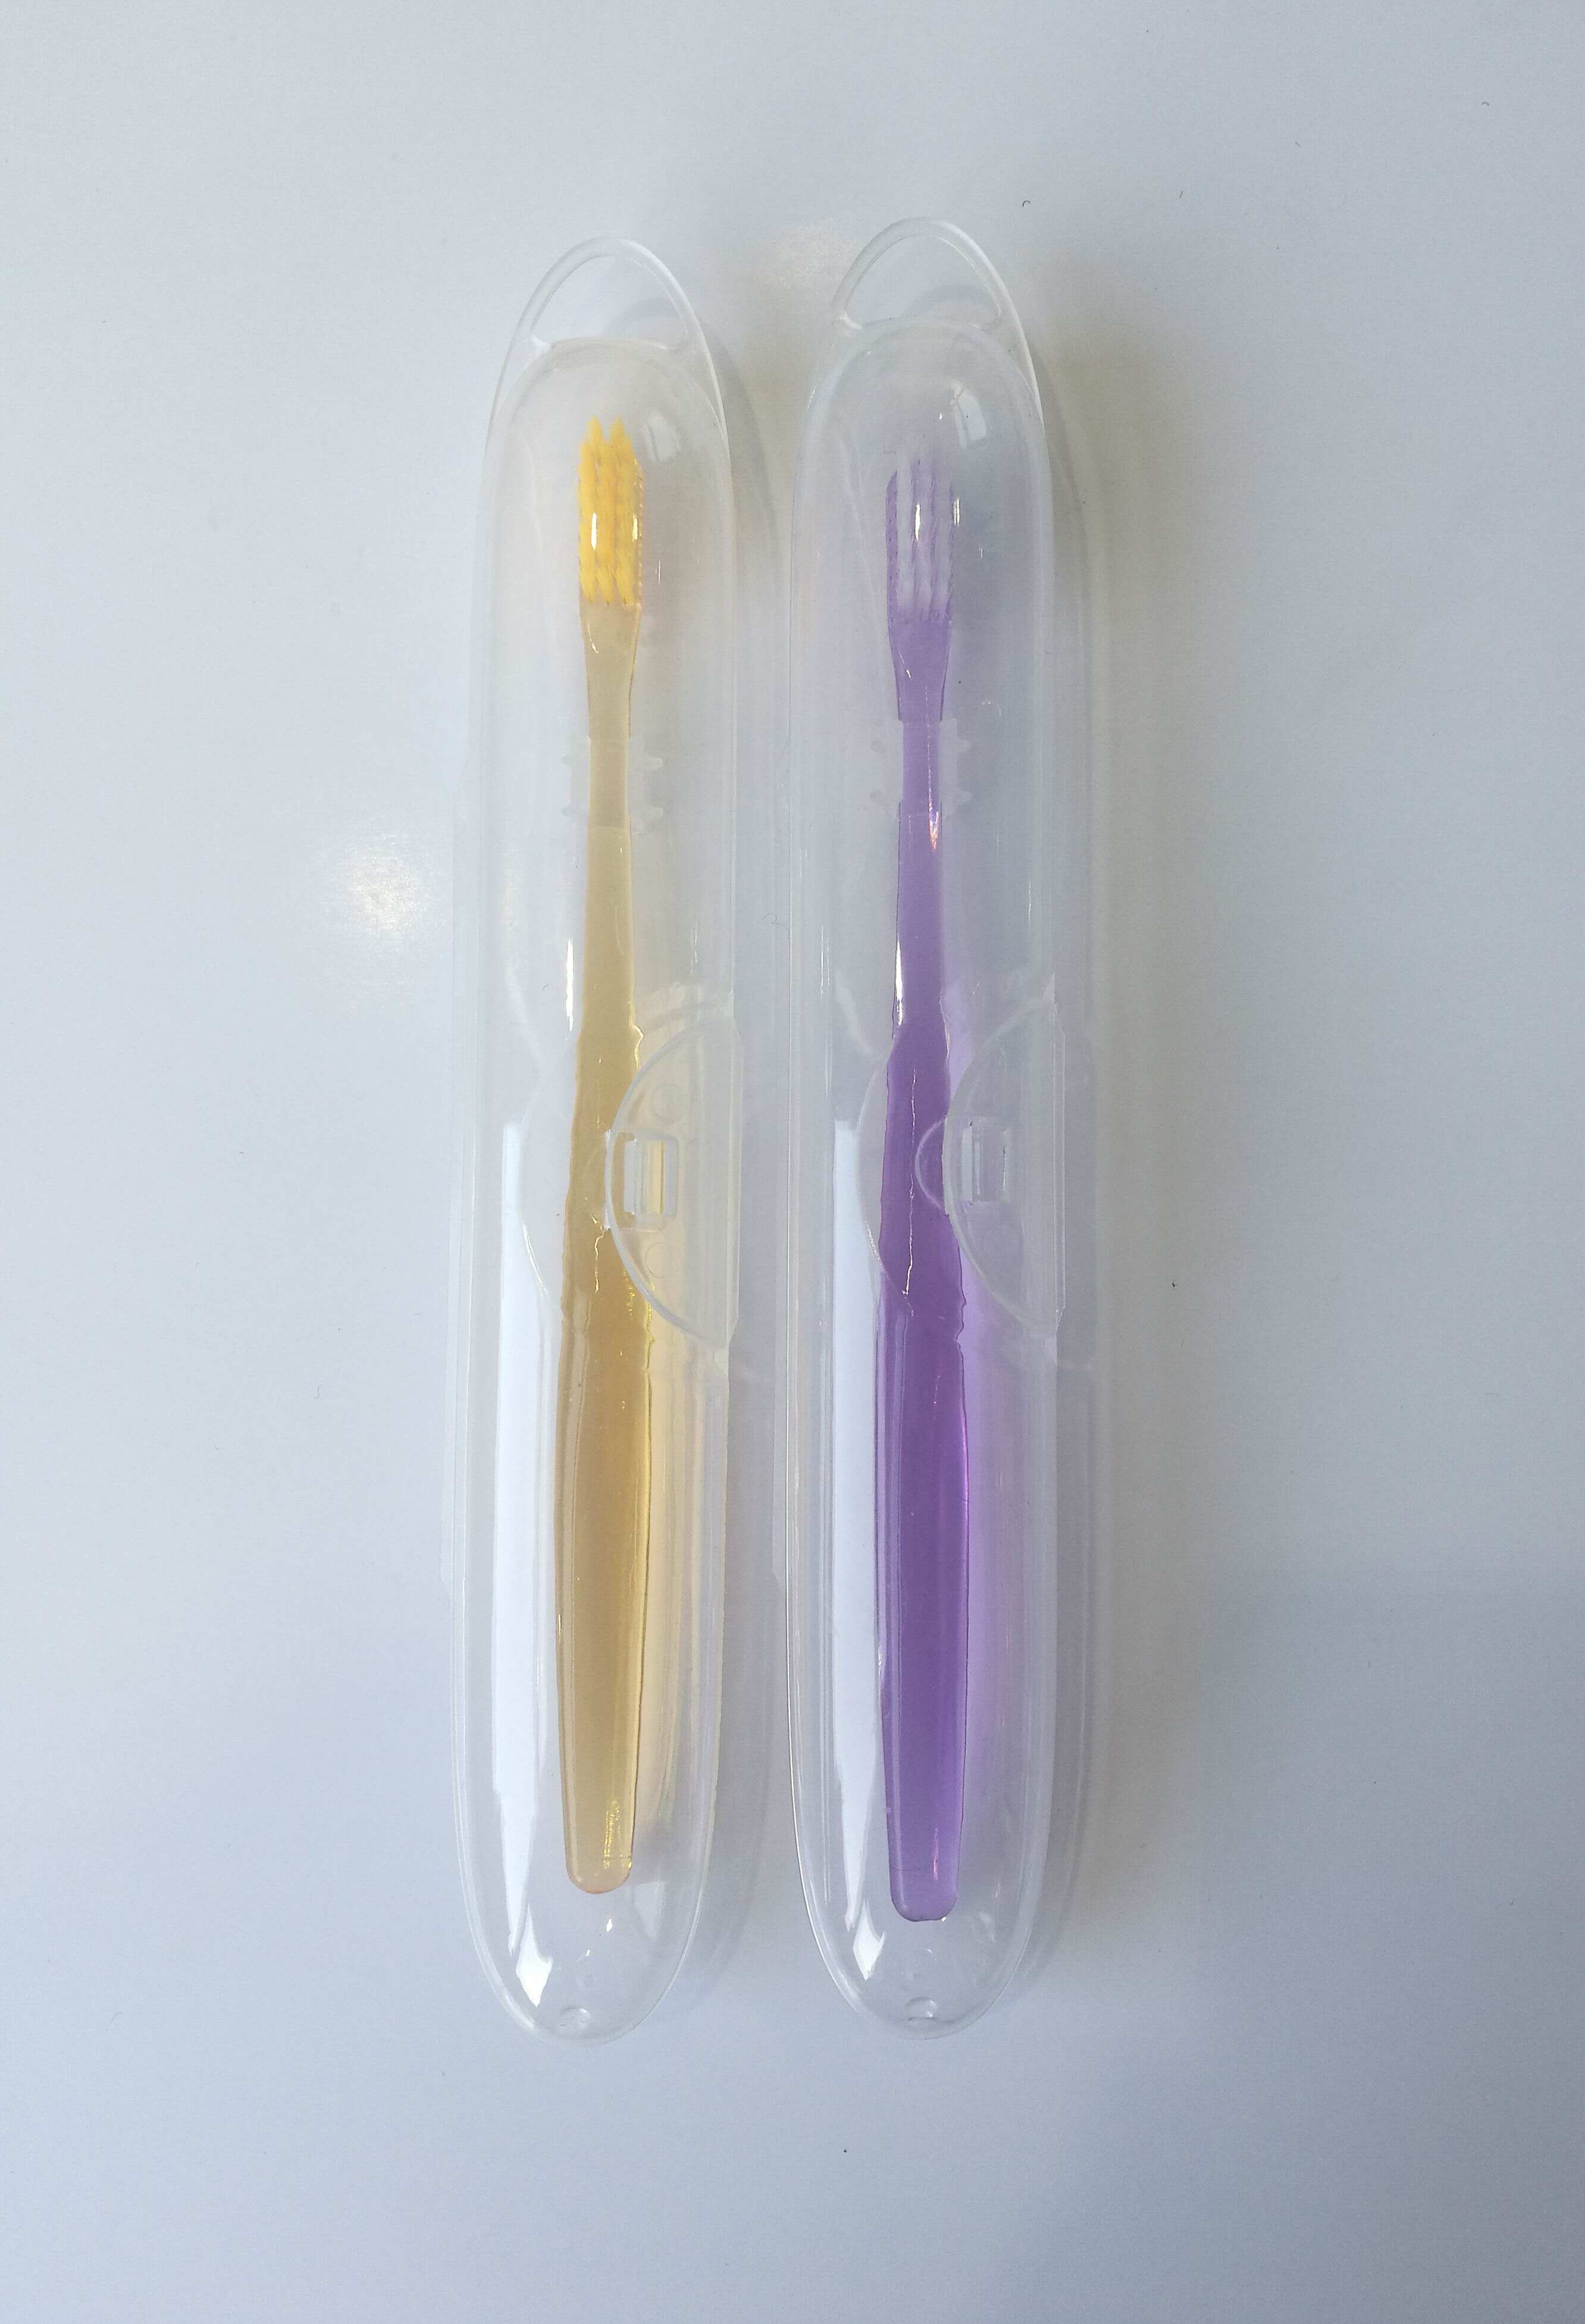 Yangzhou nouveauté distributeur de dentifrice en plastique 2 tasses porte-brosse à dents mural magnétique usine